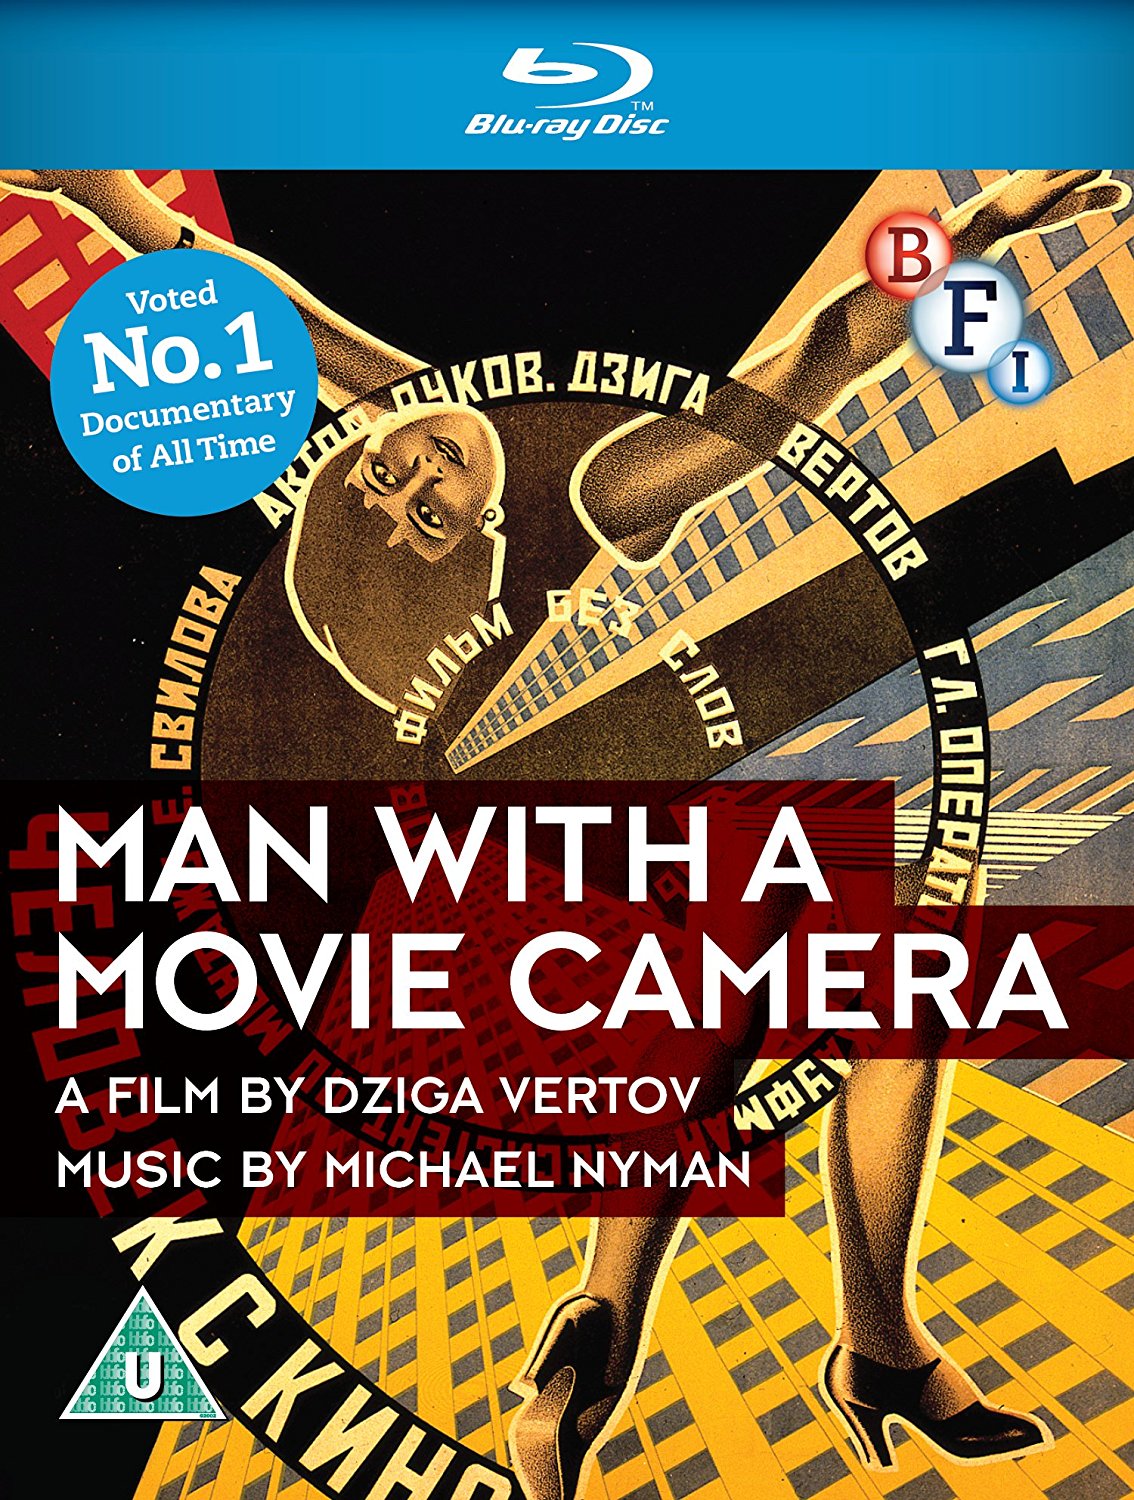 Man with a Movie Camera (Blu Ray Disc) / Chelovek s kino-apparatom | Dziga Vertov